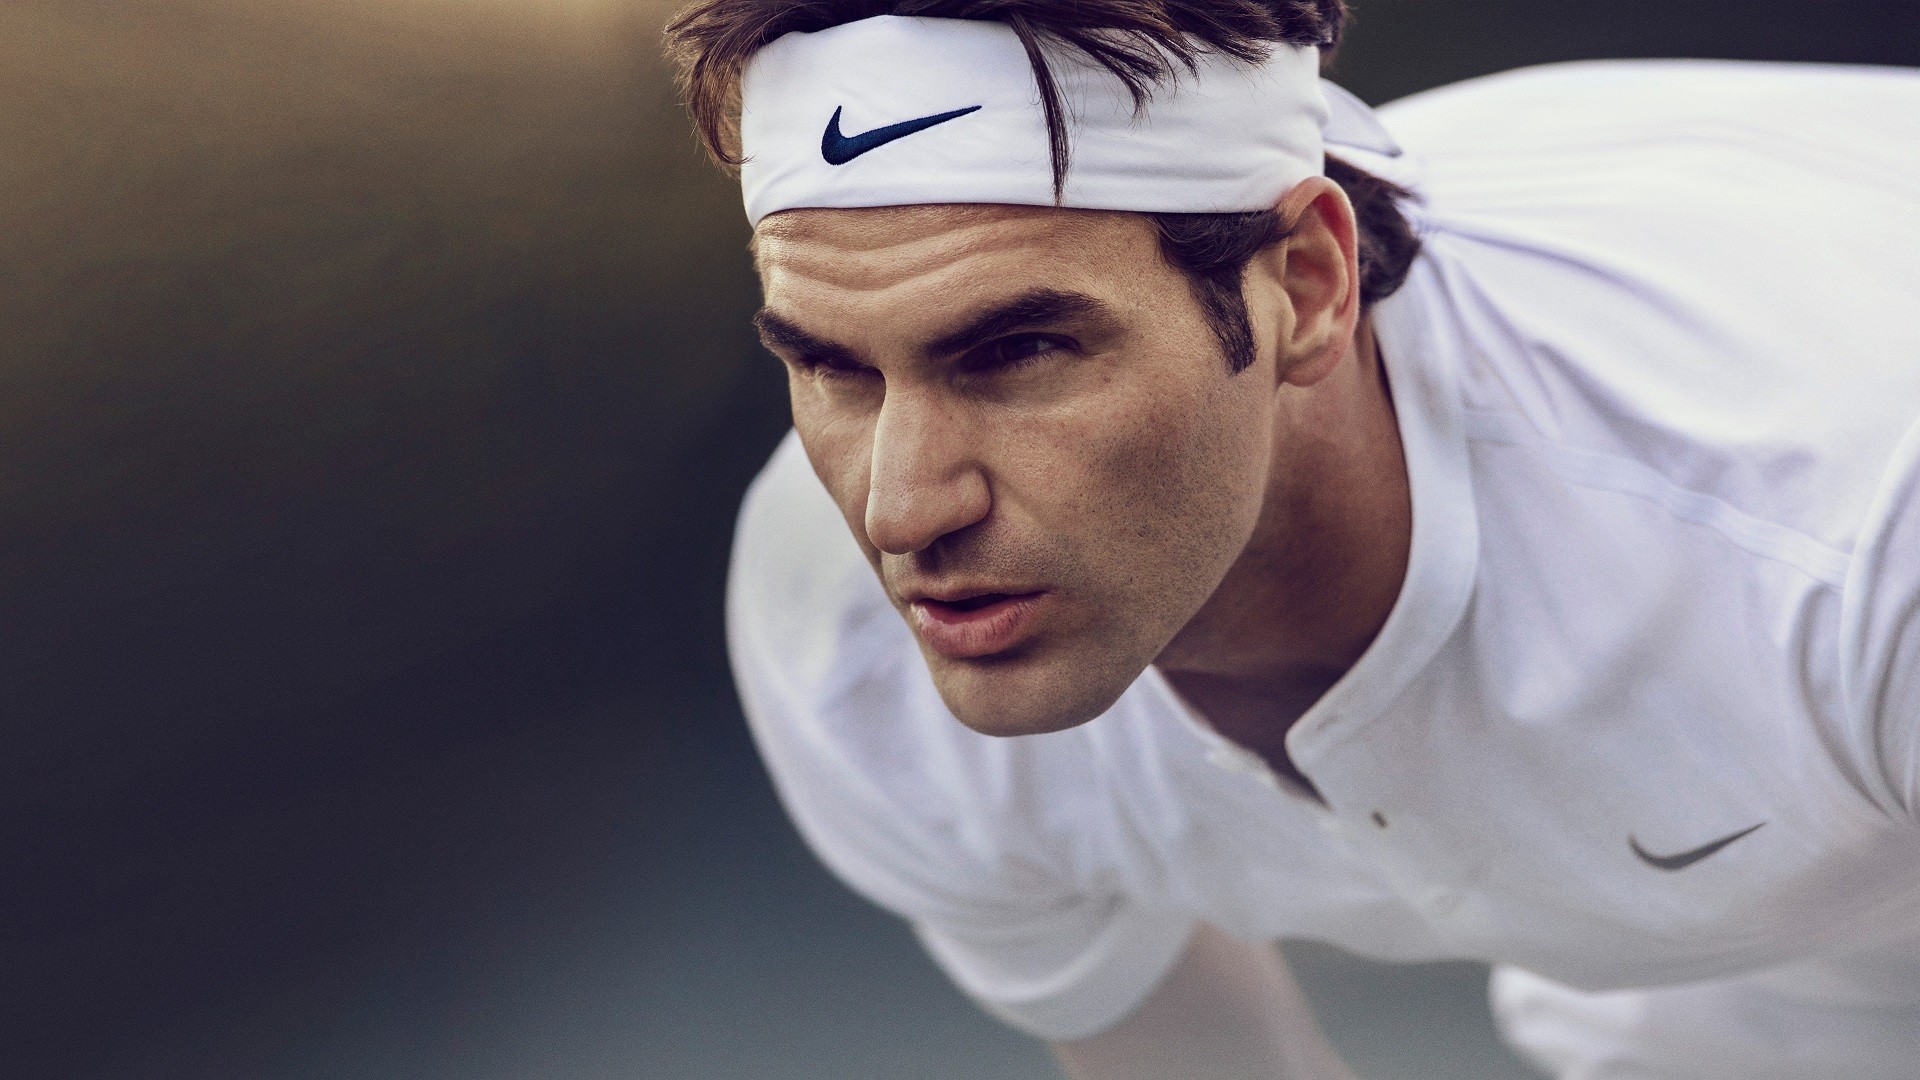 Wallpaper Roger Federer, Tennis player, Tennis, sports